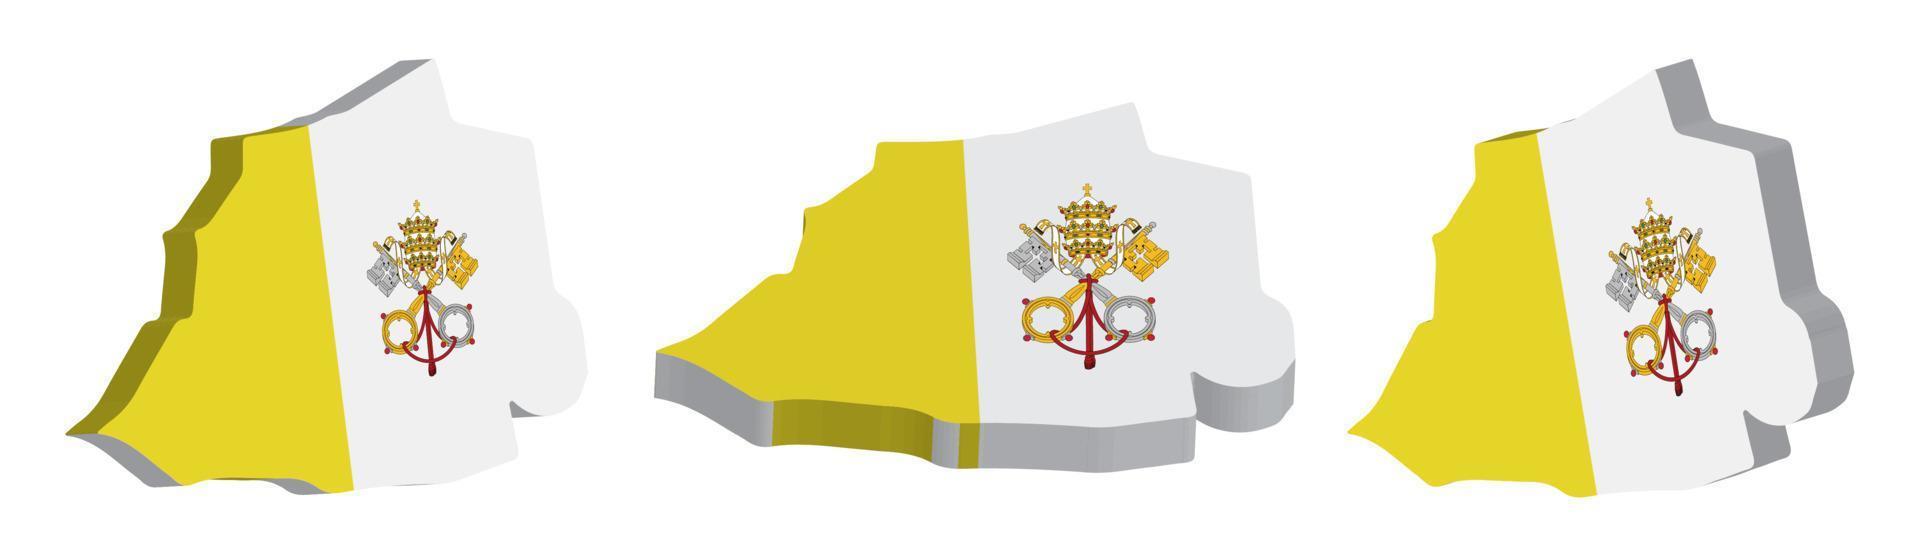 realistico 3d carta geografica di Vaticano città vettore design modello